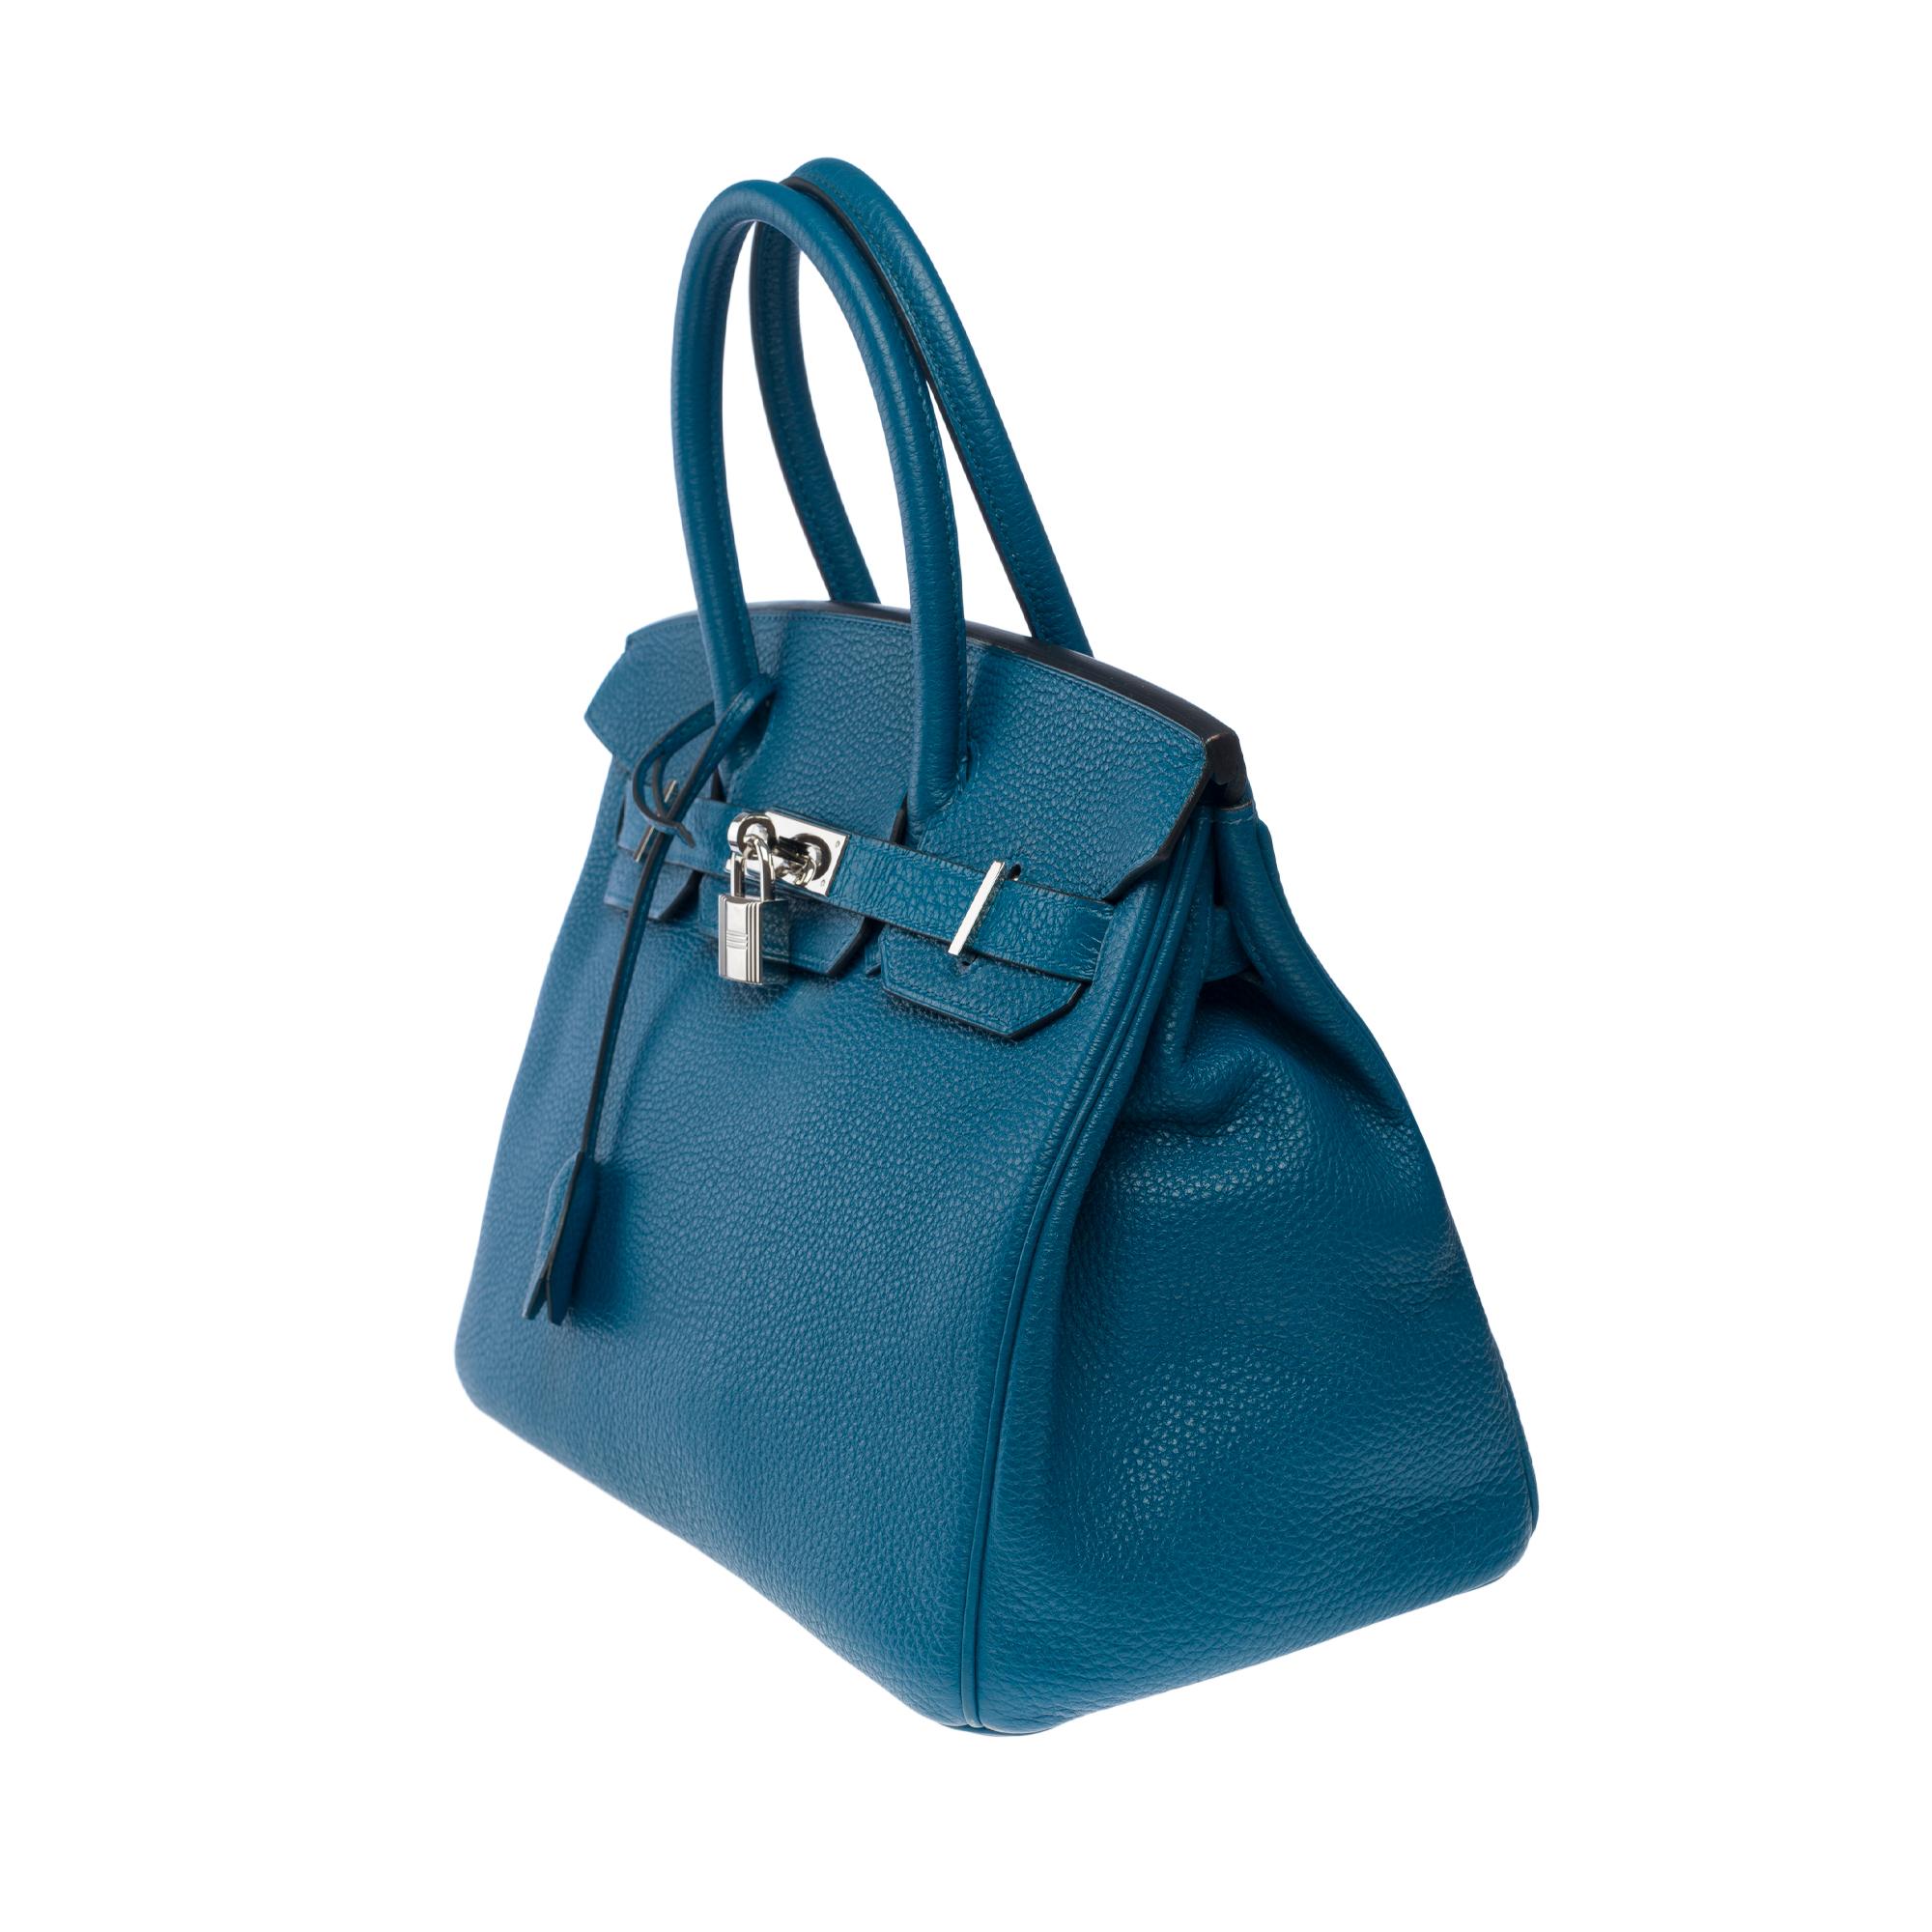 Stunning Hermes Birkin 30 handbag in Blue Togo leather, SHW For Sale 1